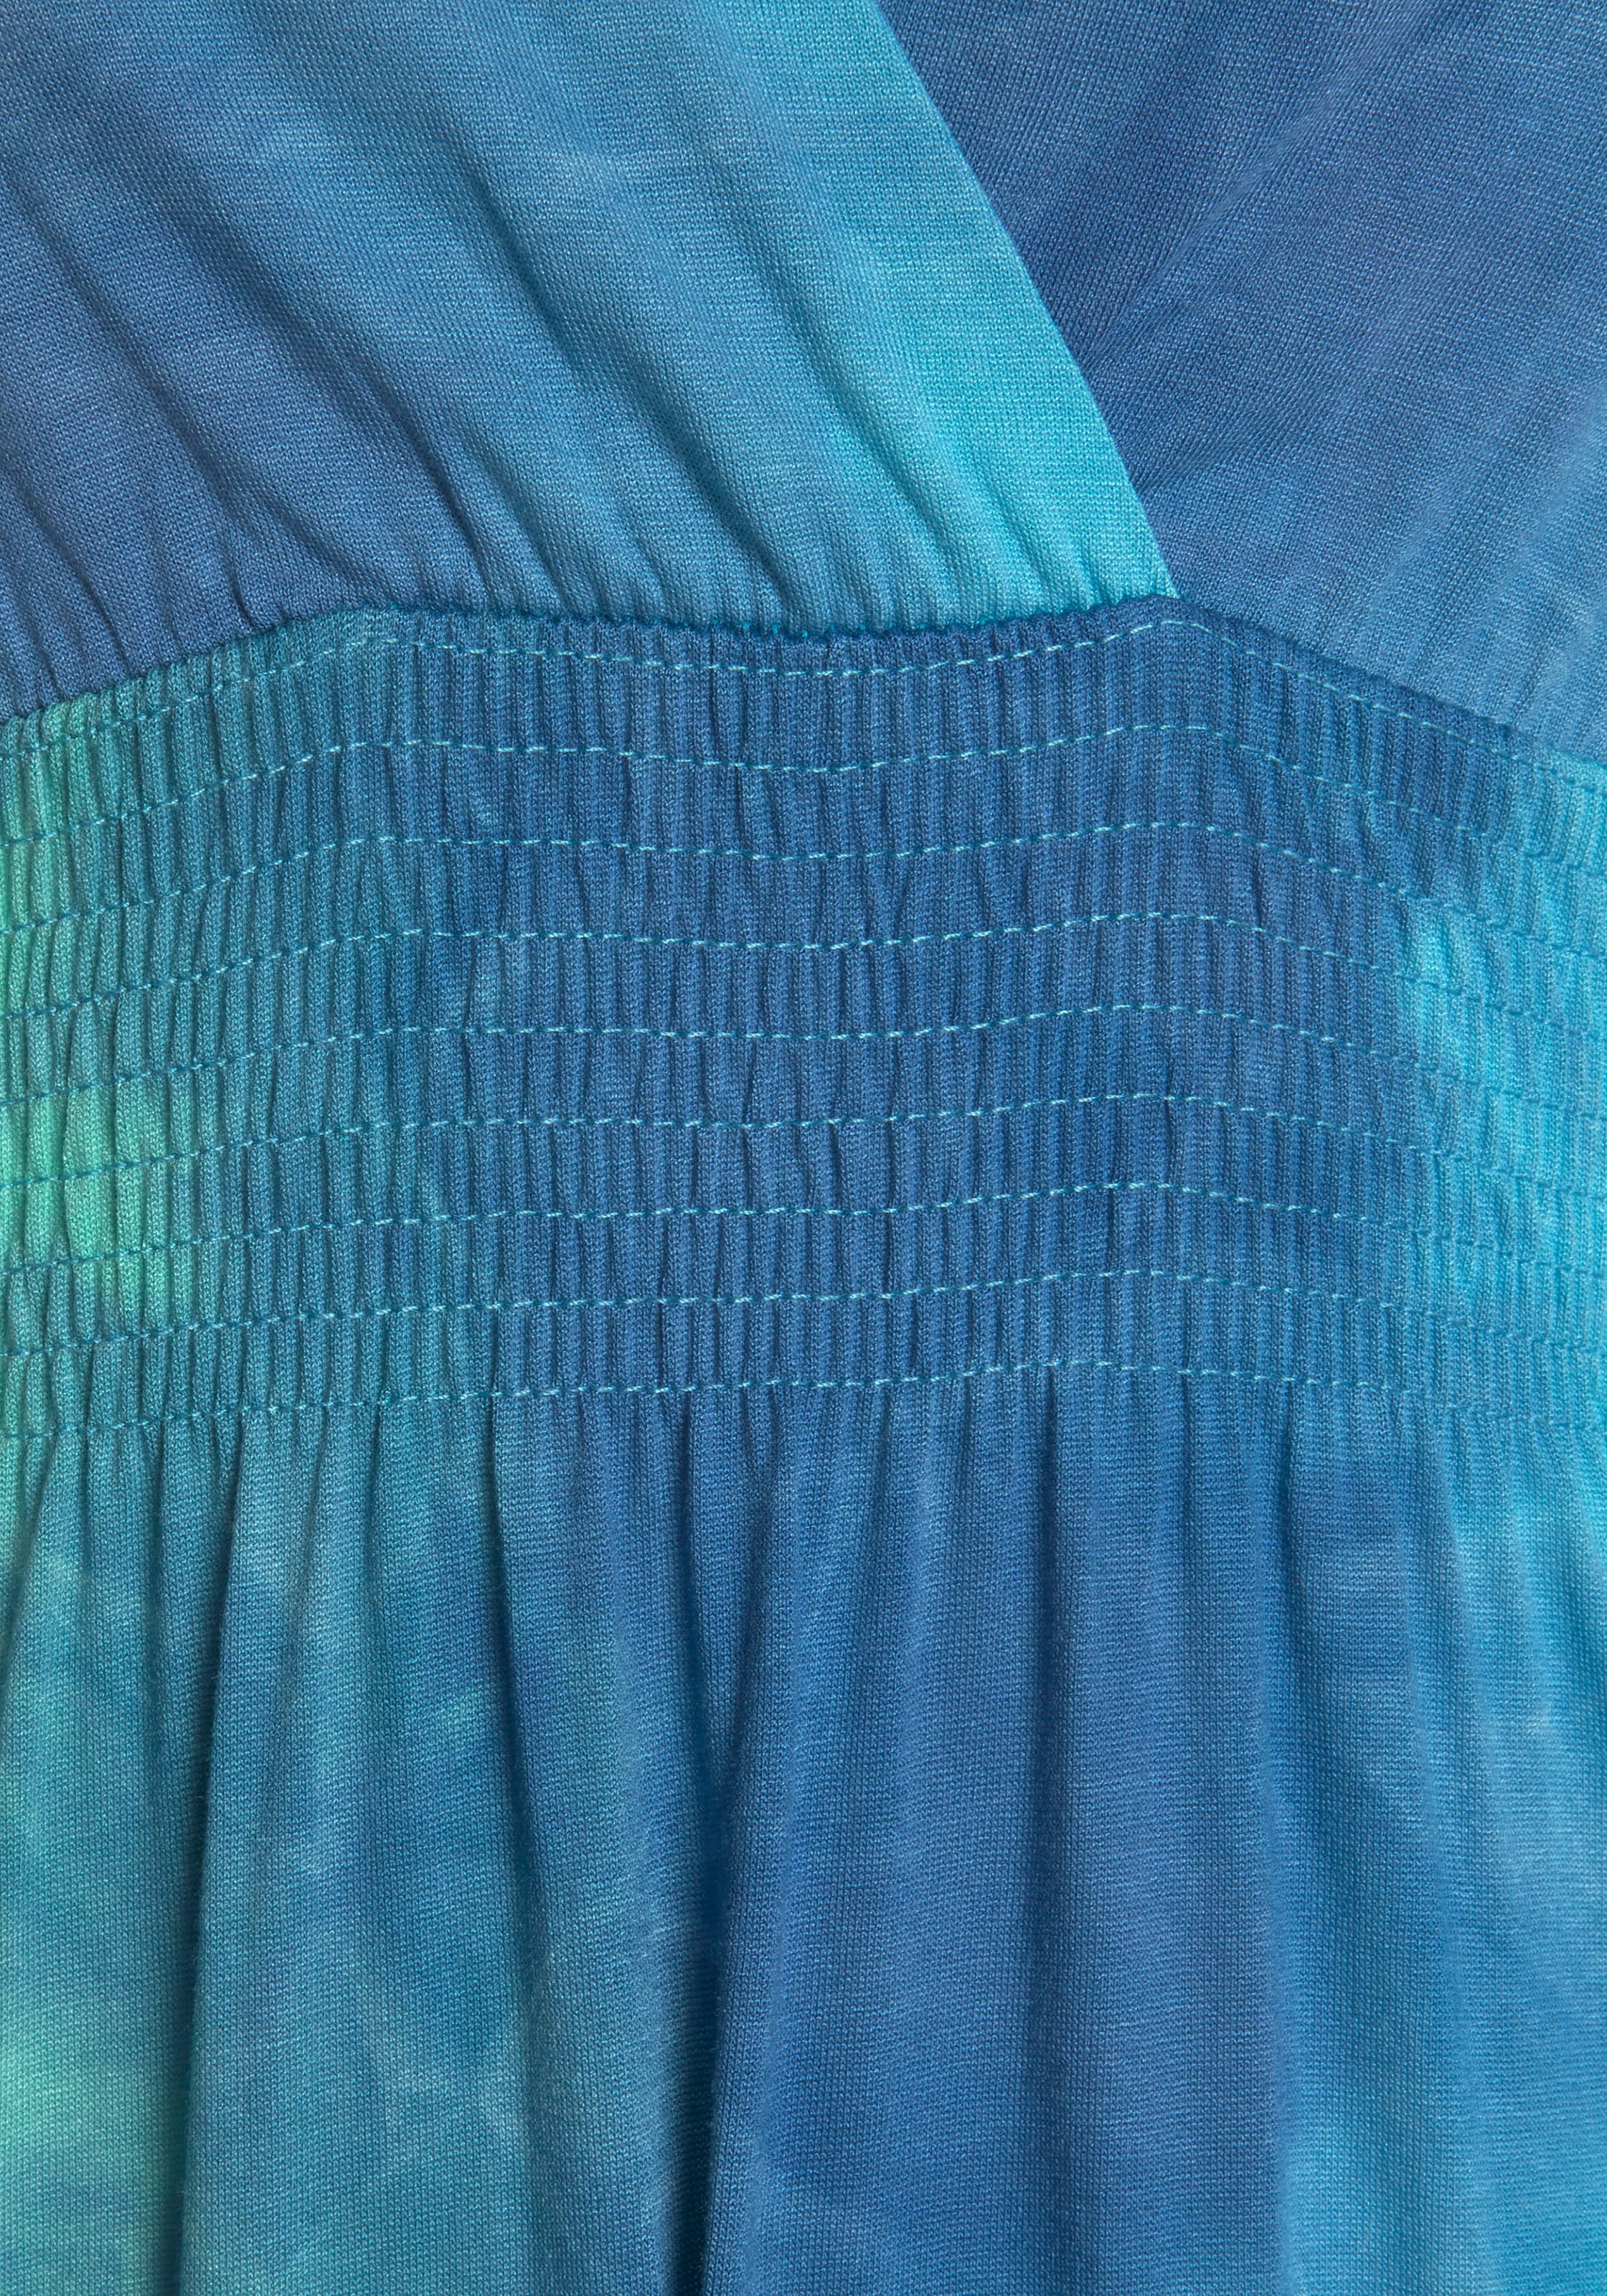 LASCANA Maxikleid, mit Batikdruck und verstellbarem Ausschitt, Sommerkleid, Strandkleid